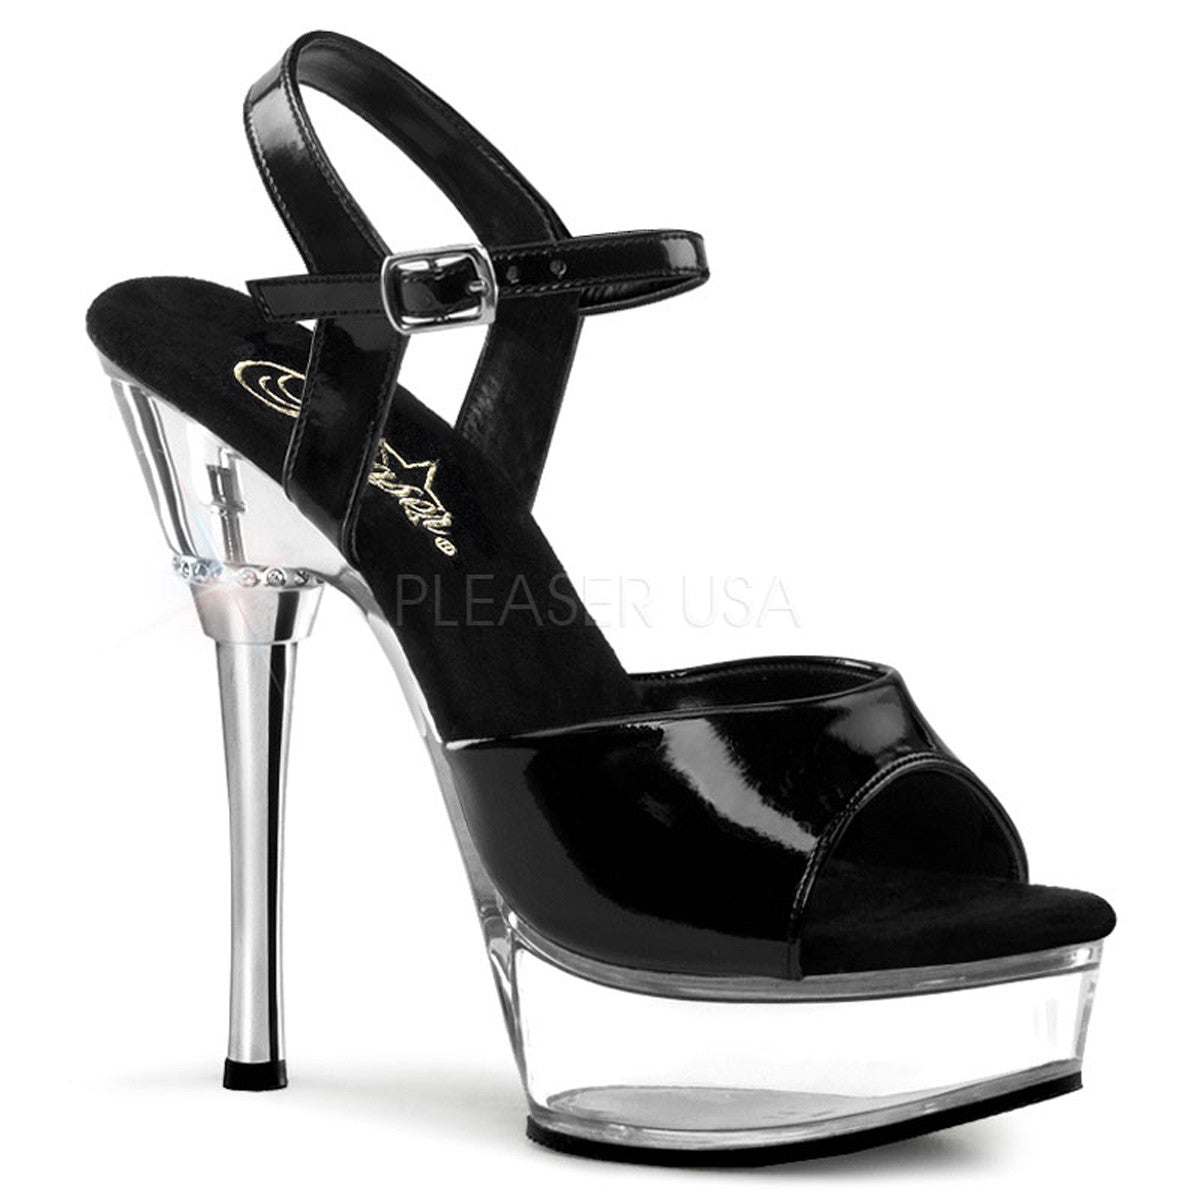 PLEASER ALLURE-609 Black Pat-Clear Stiletto Sandals - Shoecup.com - 1